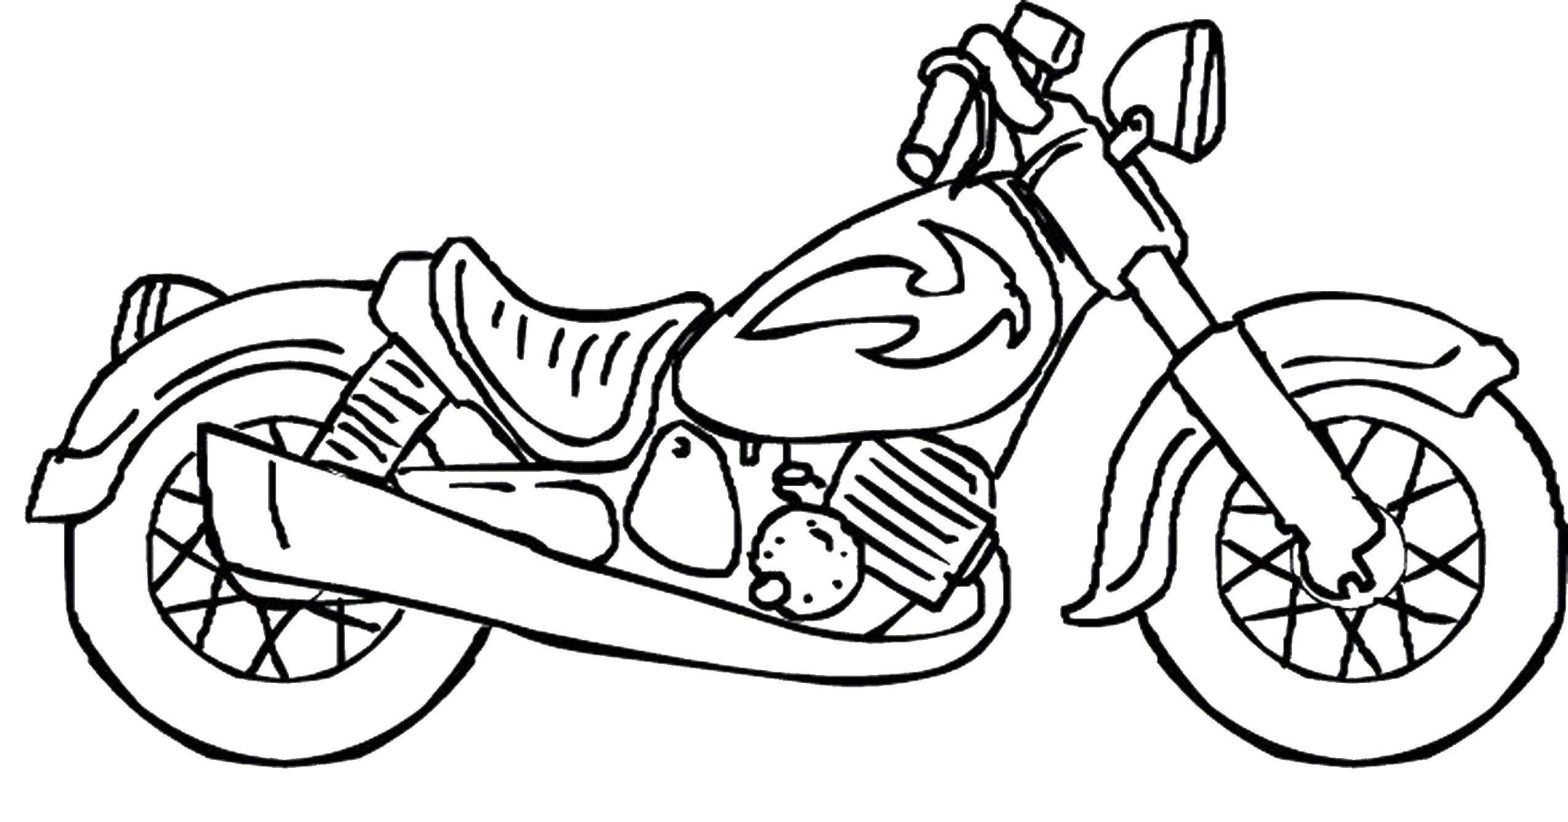 Раскраски для мальчиков с изображениями мотоциклов разных моделей и марок